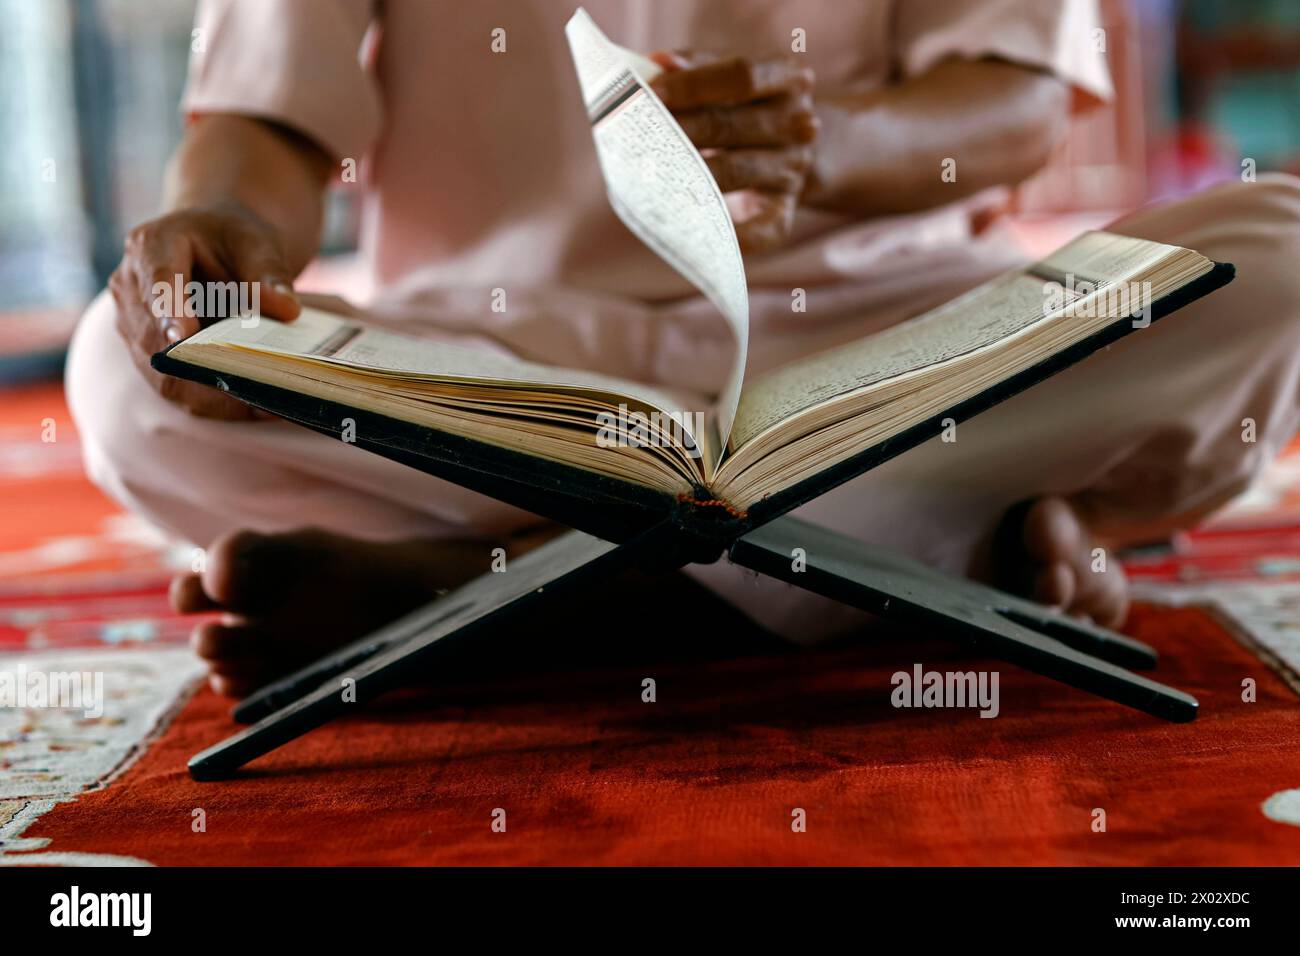 Homme musulman assis à lire le Coran (Coran) le livre Saint de l'Islam, Mosquée Moubarak, Chau Doc, Vietnam, Indochine, Asie du Sud-est, Asie Banque D'Images